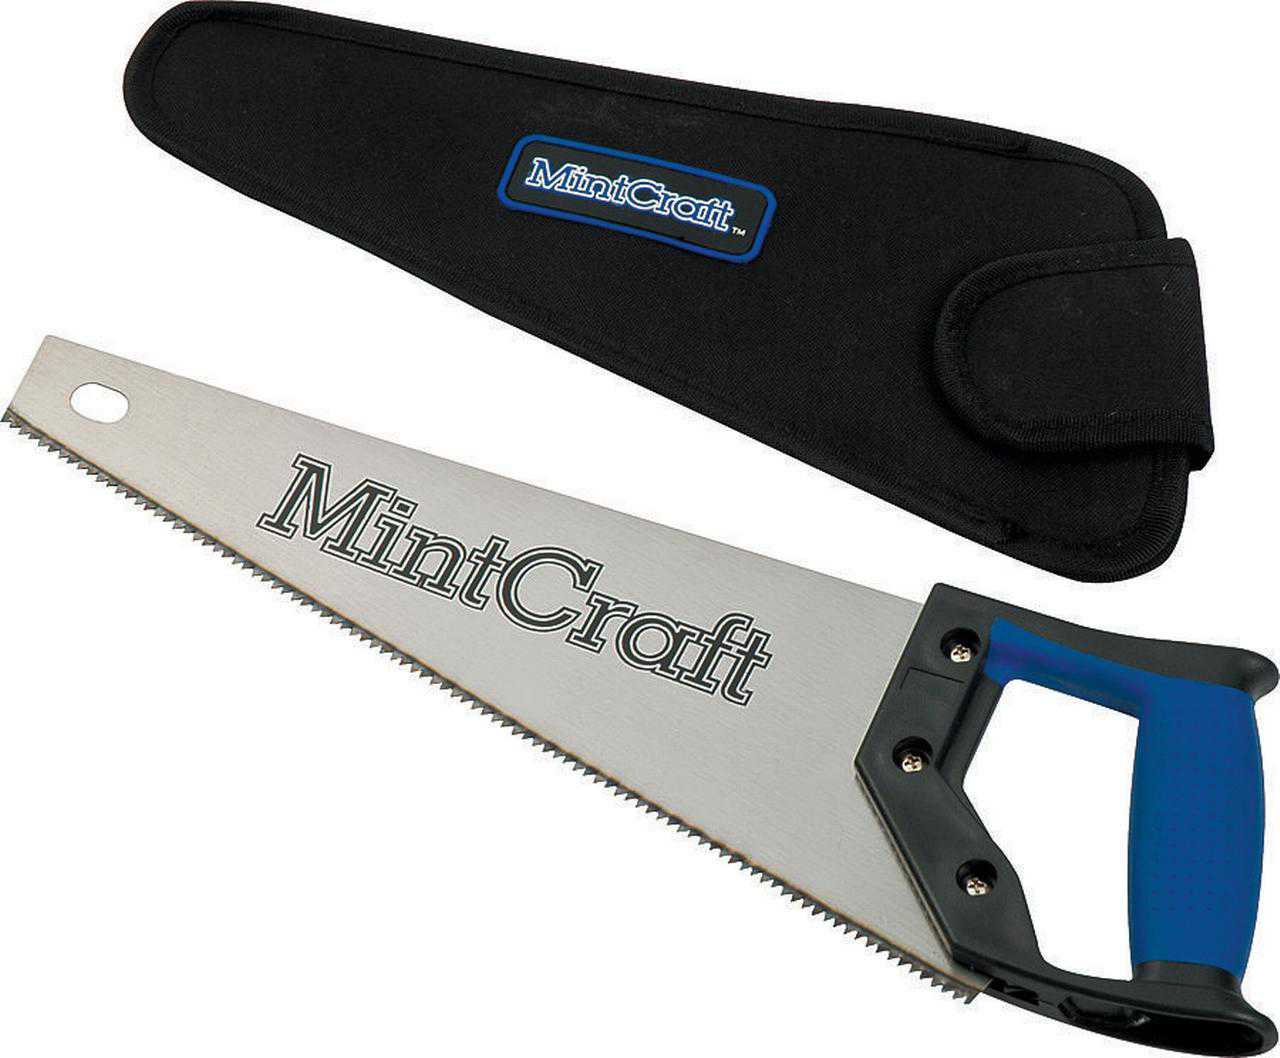 Mintcraft JL-K117413L Hand Saw With Sheath, 14 in L, 9 TPI